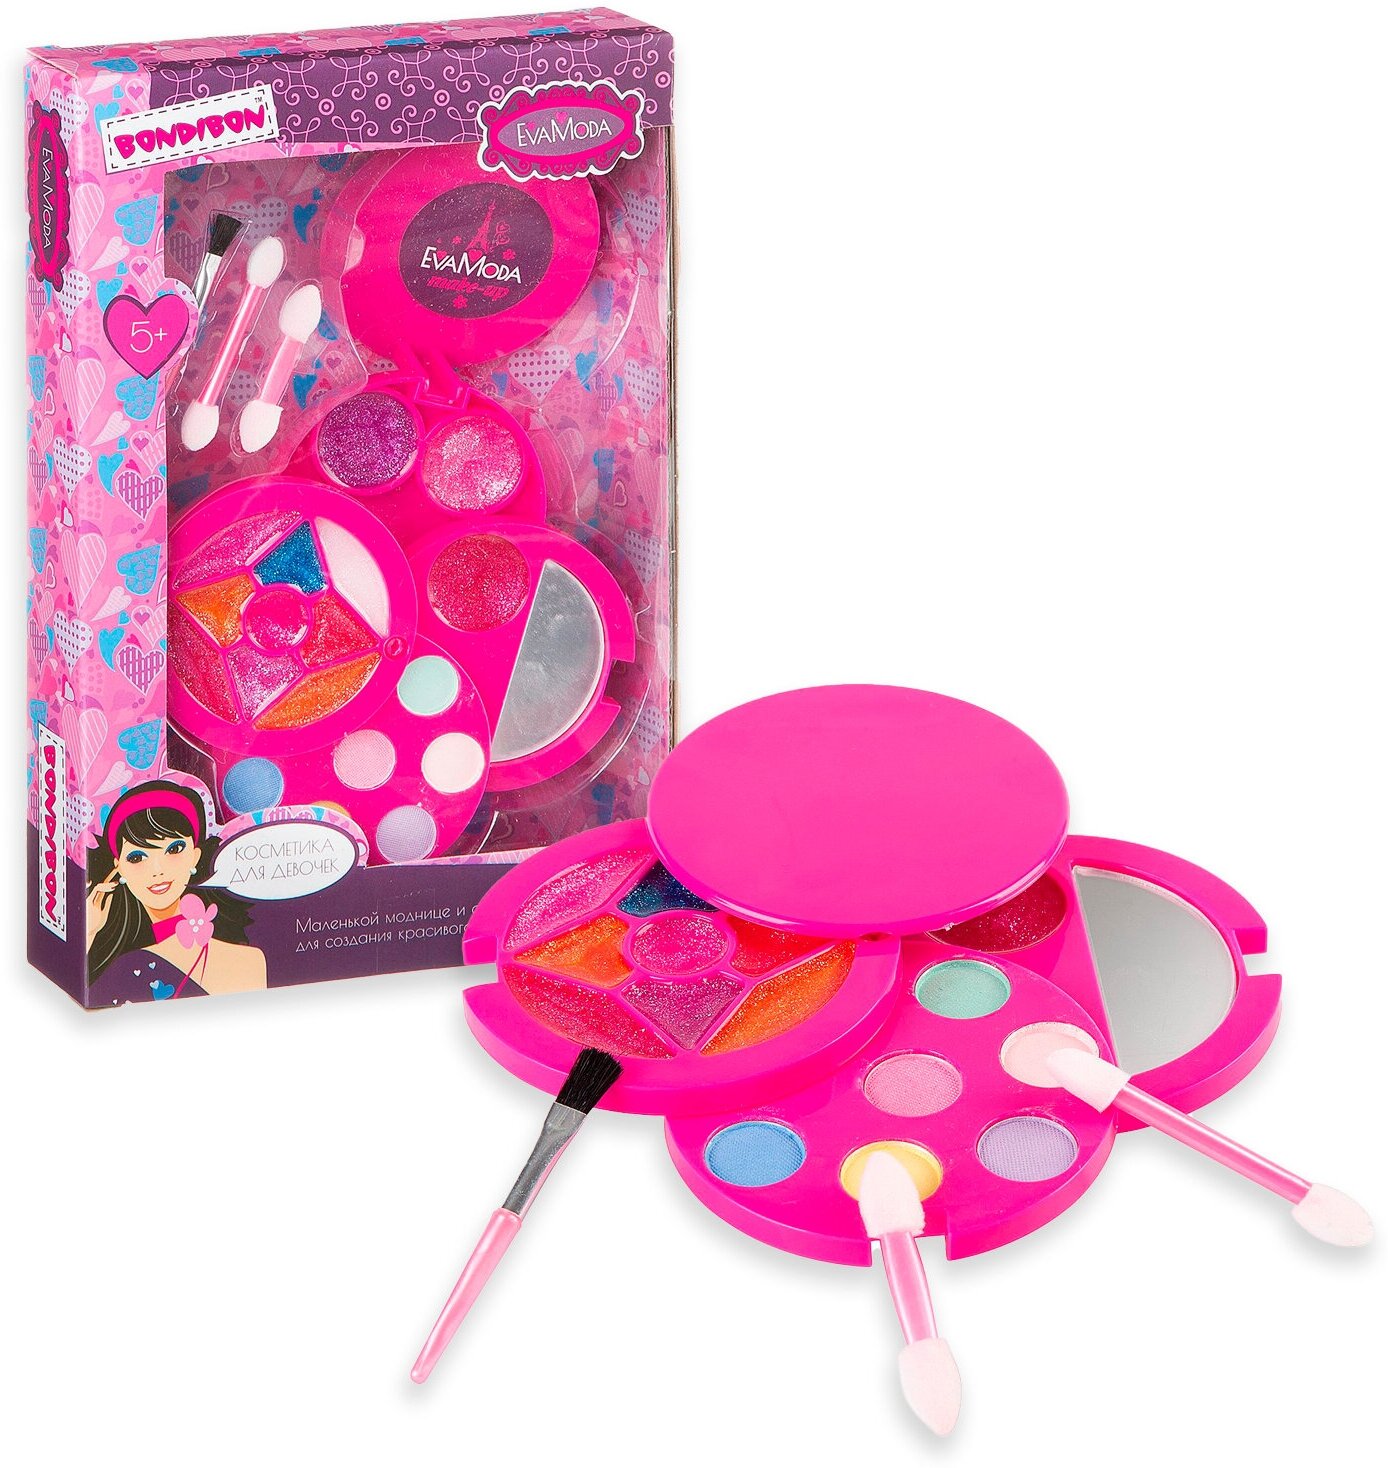 Набор декоративной косметики для девочек круг розовый, 4 уровня, 6 оттенков теней, 12 блесков для губ, аксессуары Eva Moda Bondibon подарок девочке